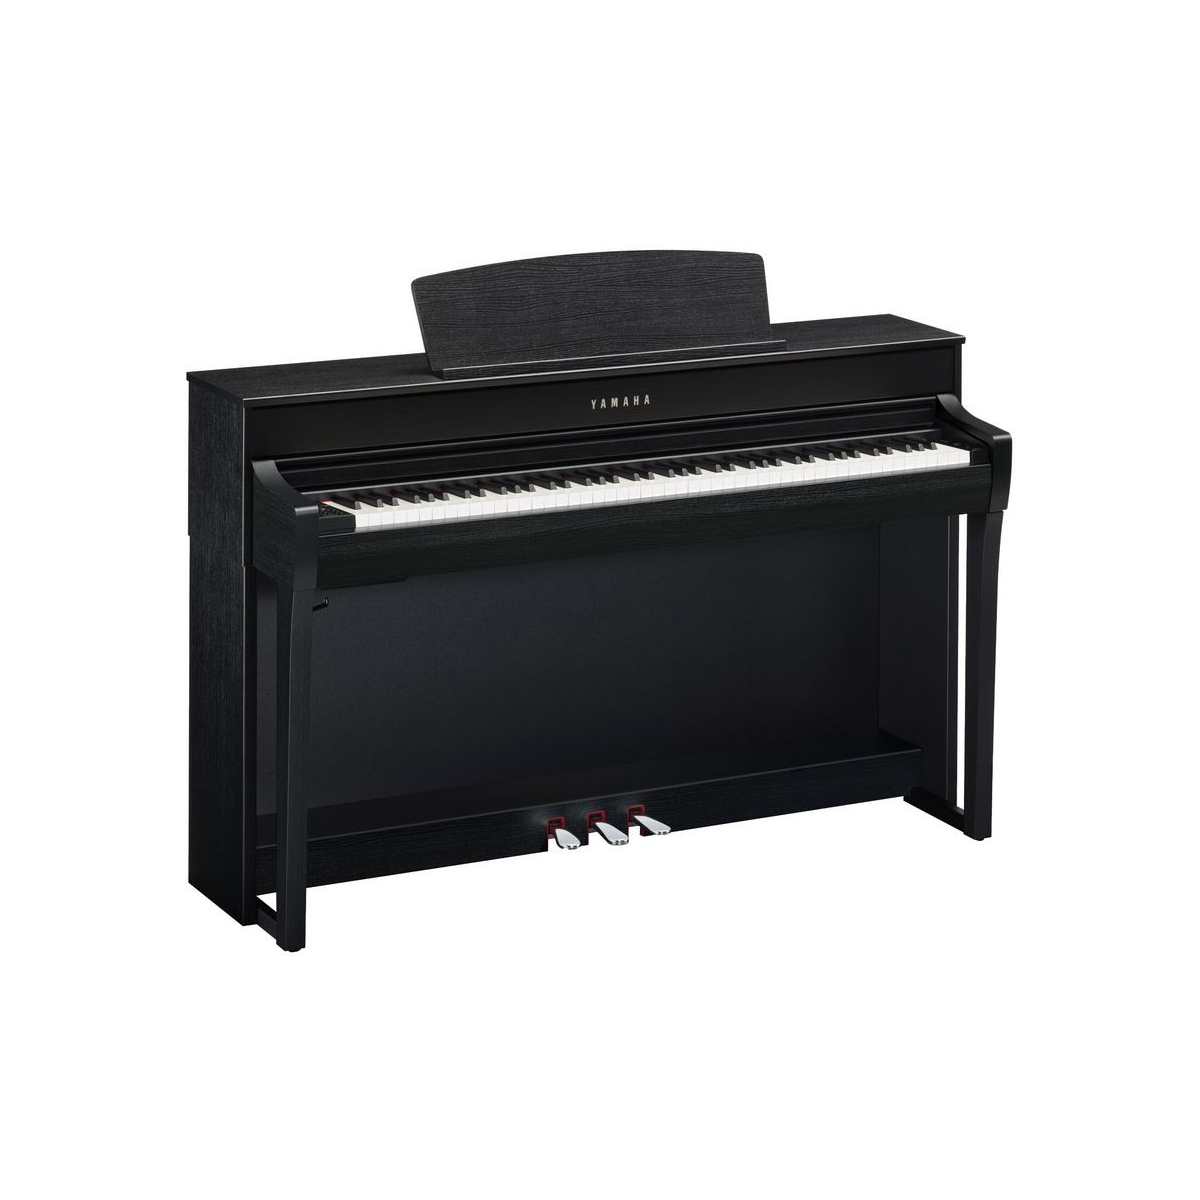 Pianos numériques meubles - Yamaha - CLP-745 (NOIR LAQUÉ)